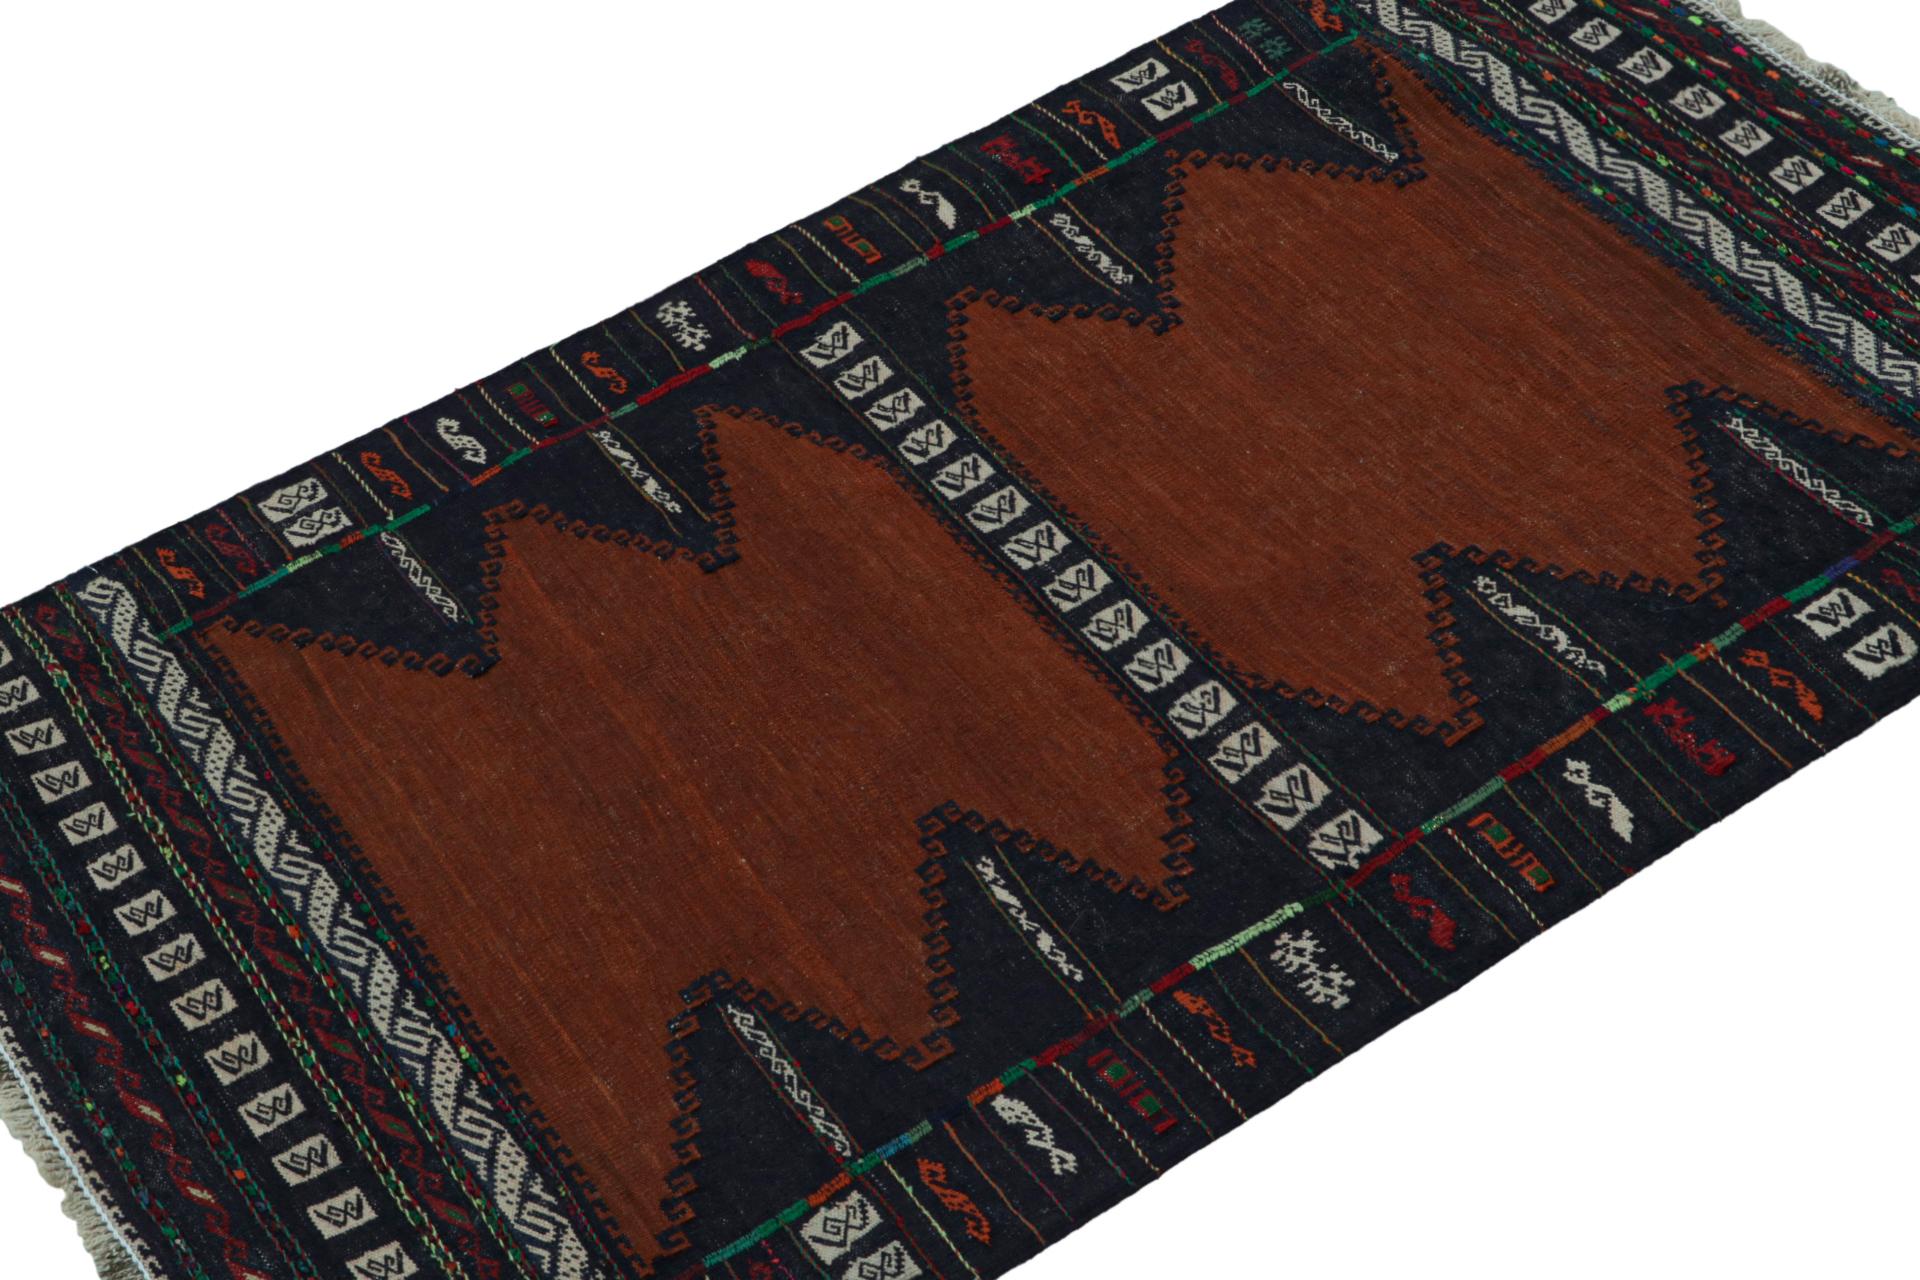 Dieser handgewebte afghanische 3x4 Stammes-Kilim aus Wolle (ca. 1950-1960) ist ein exquisites Stück aus dem Stammesleben, das im Nomadenalltag oft als Tischdecke verwendet wurde, ähnlich wie die persischen Sofreh-Kilims. 

Über das Design: